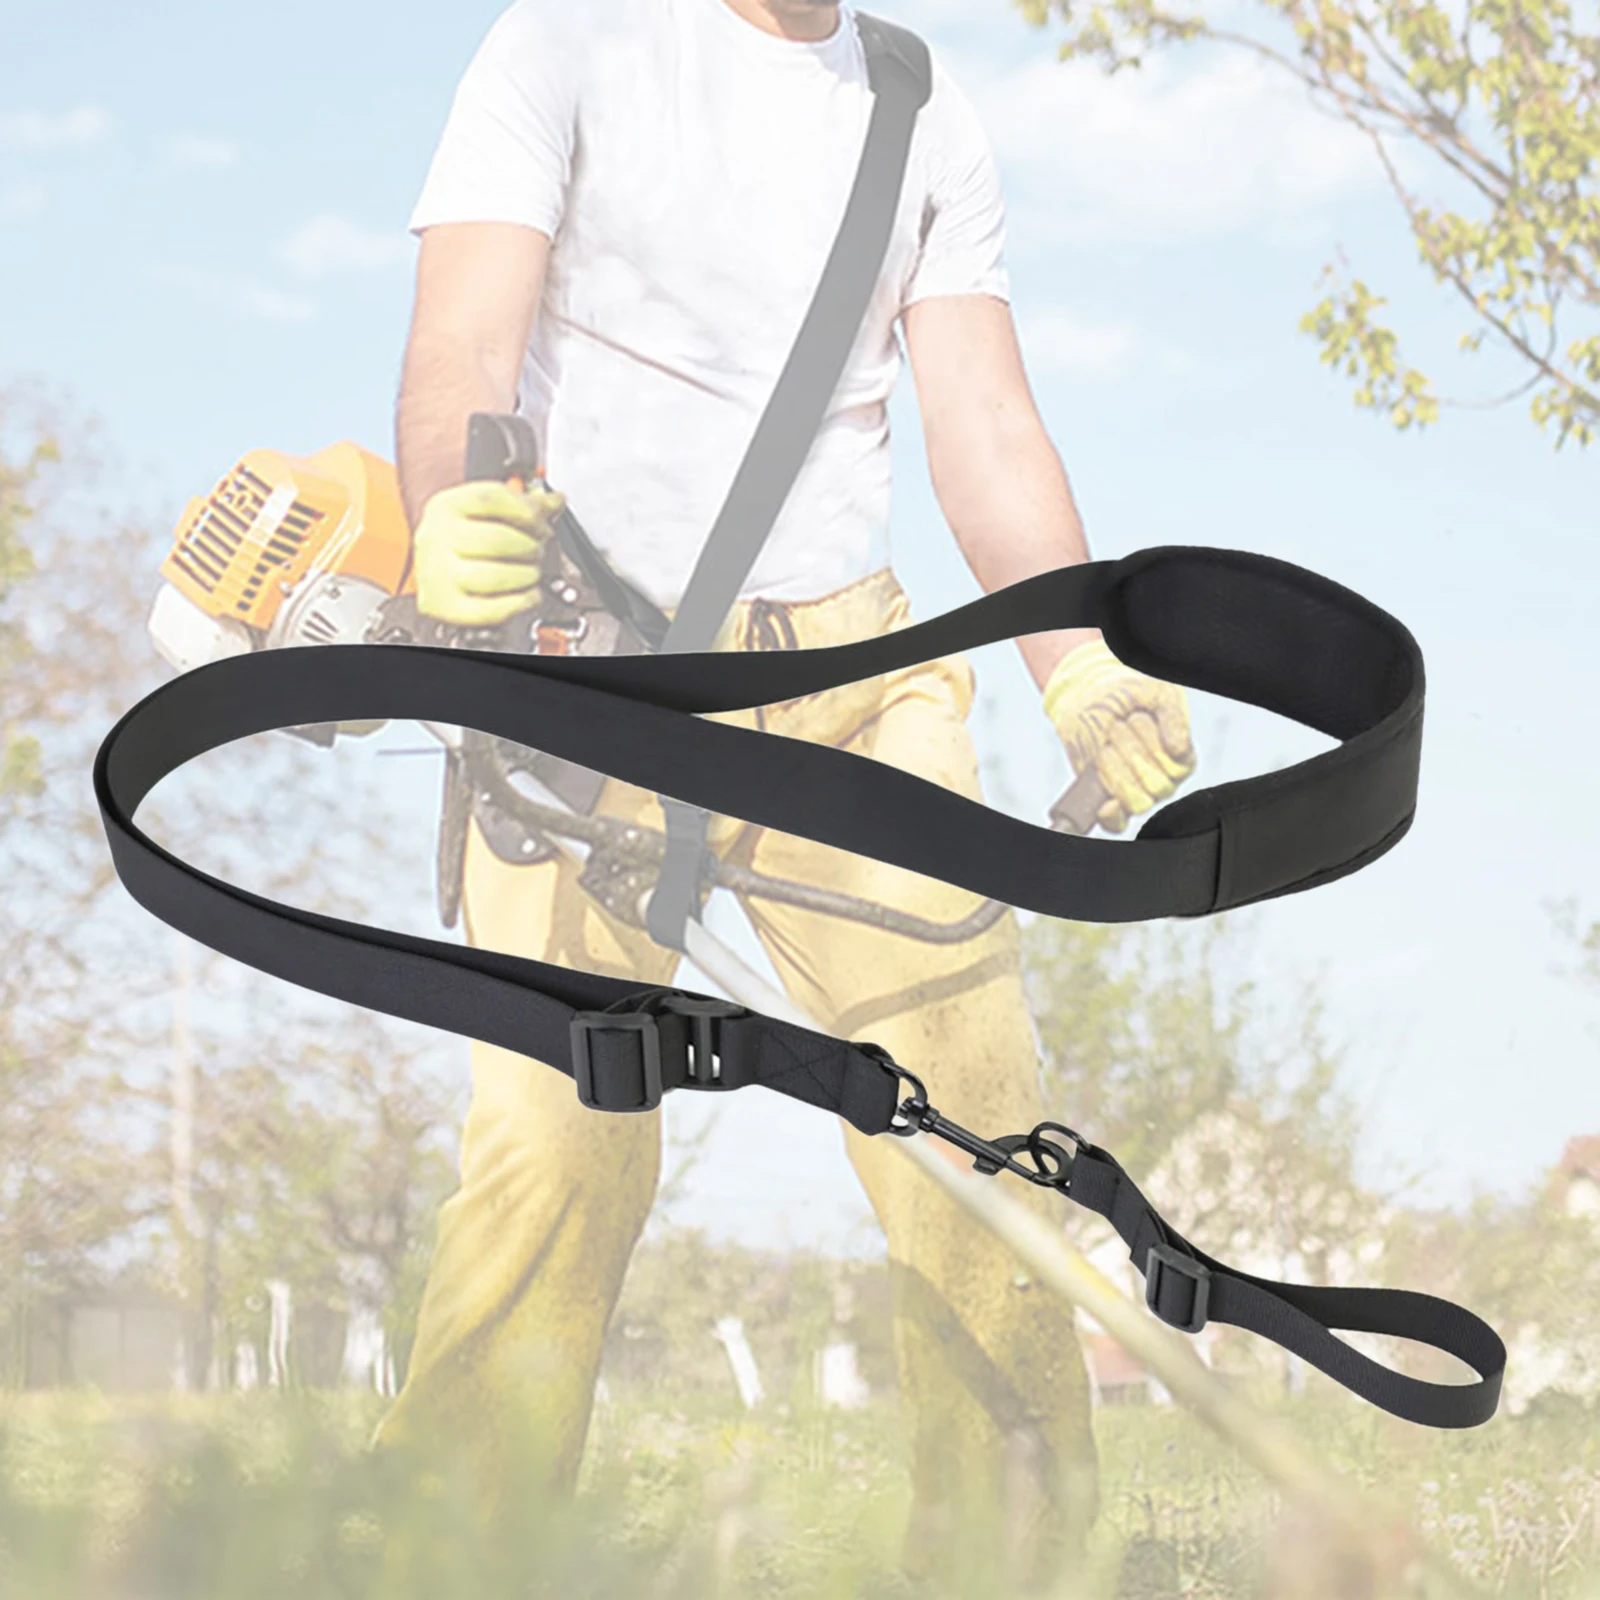 Trimmer Shoulder Strap Unviersal Single Shoulder Padded Harness Strap Black For Brush Cutter